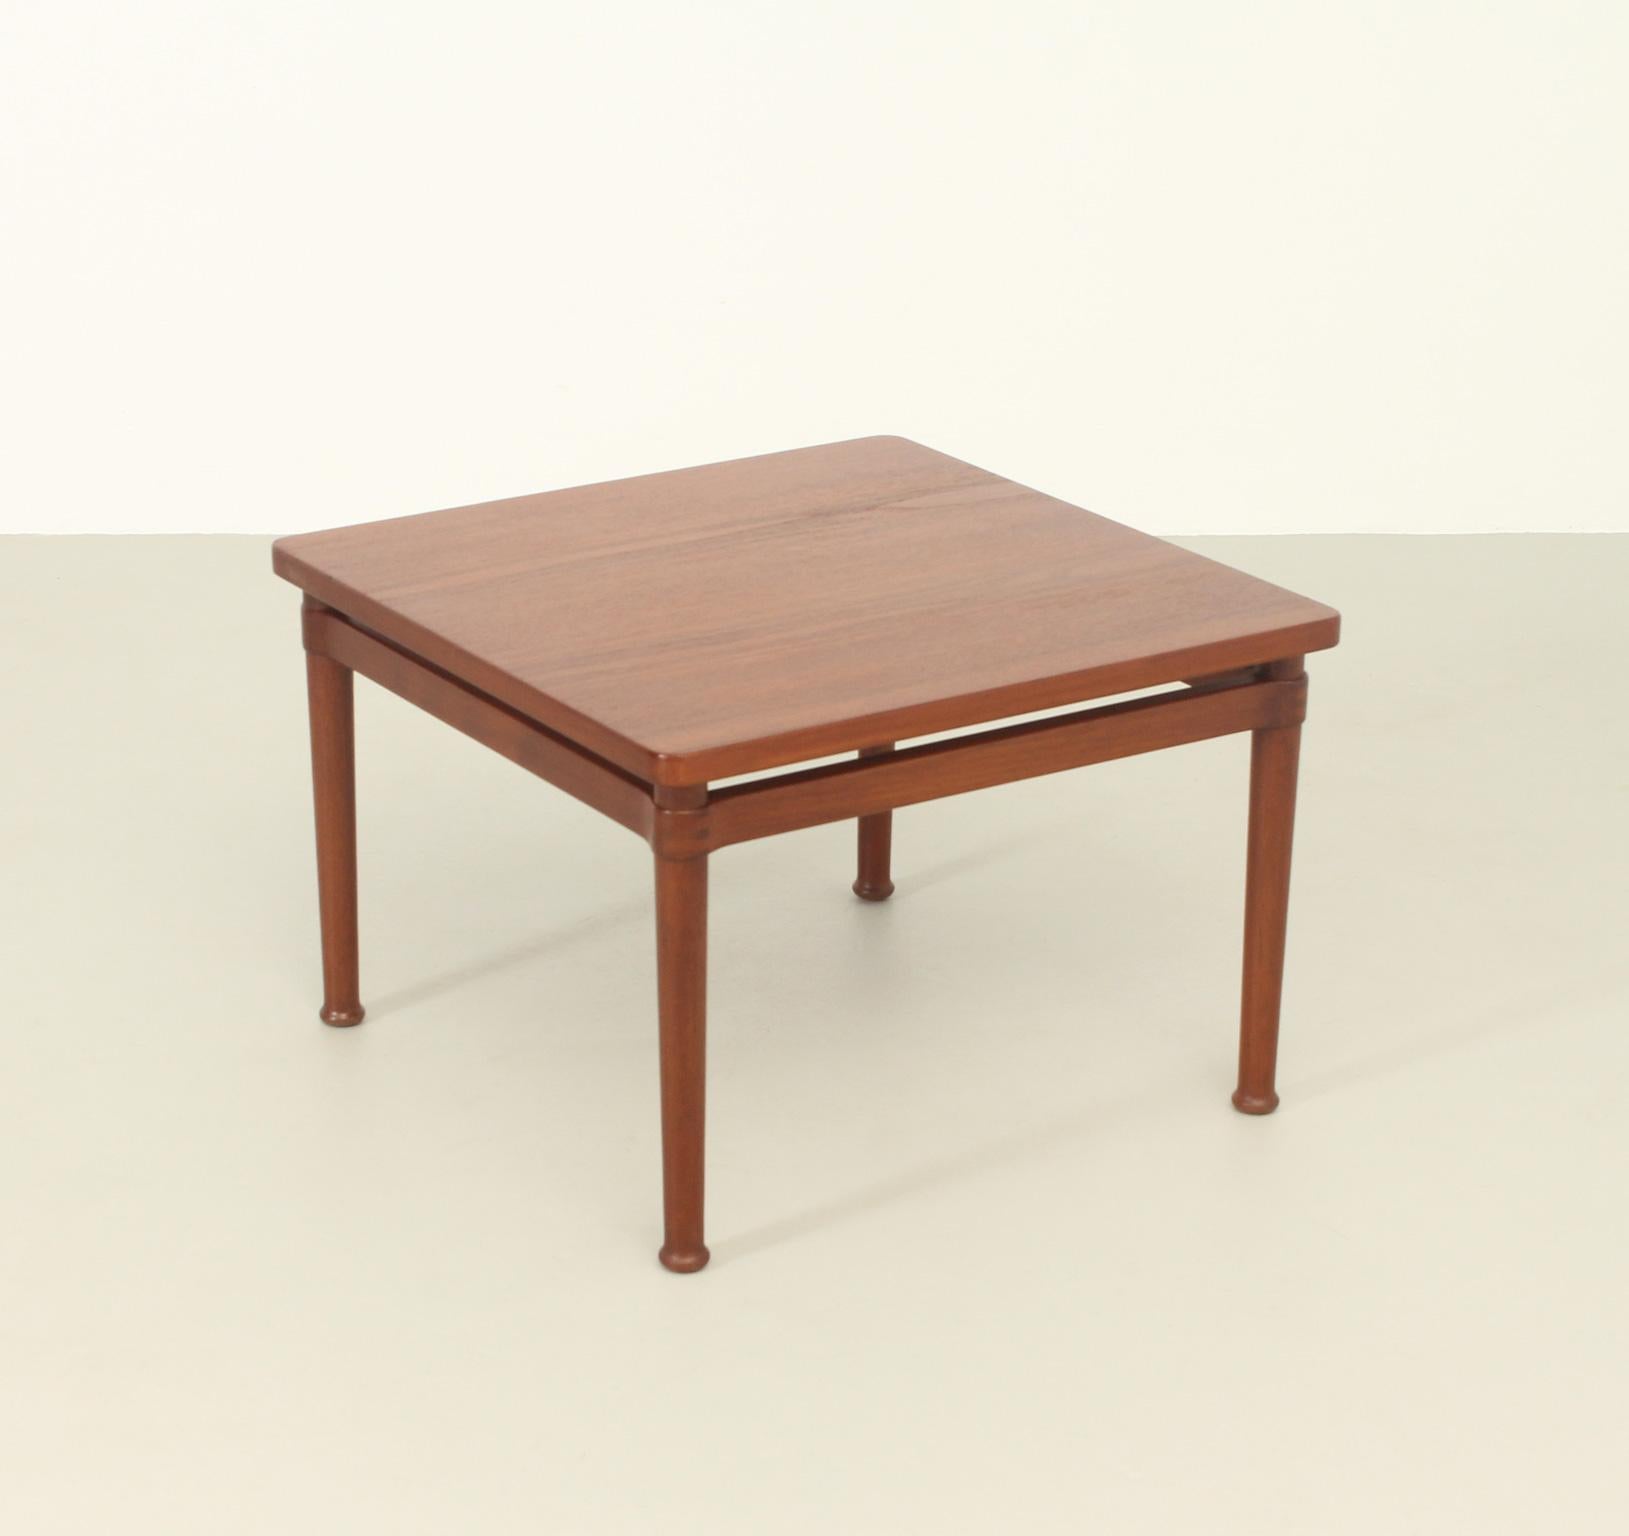 Square side table designed in 1950's by Kai Lyngfeldt Larsen for Søborg Møbler, Denmark. Very rare model in massive teak wood with nice details in the joints.